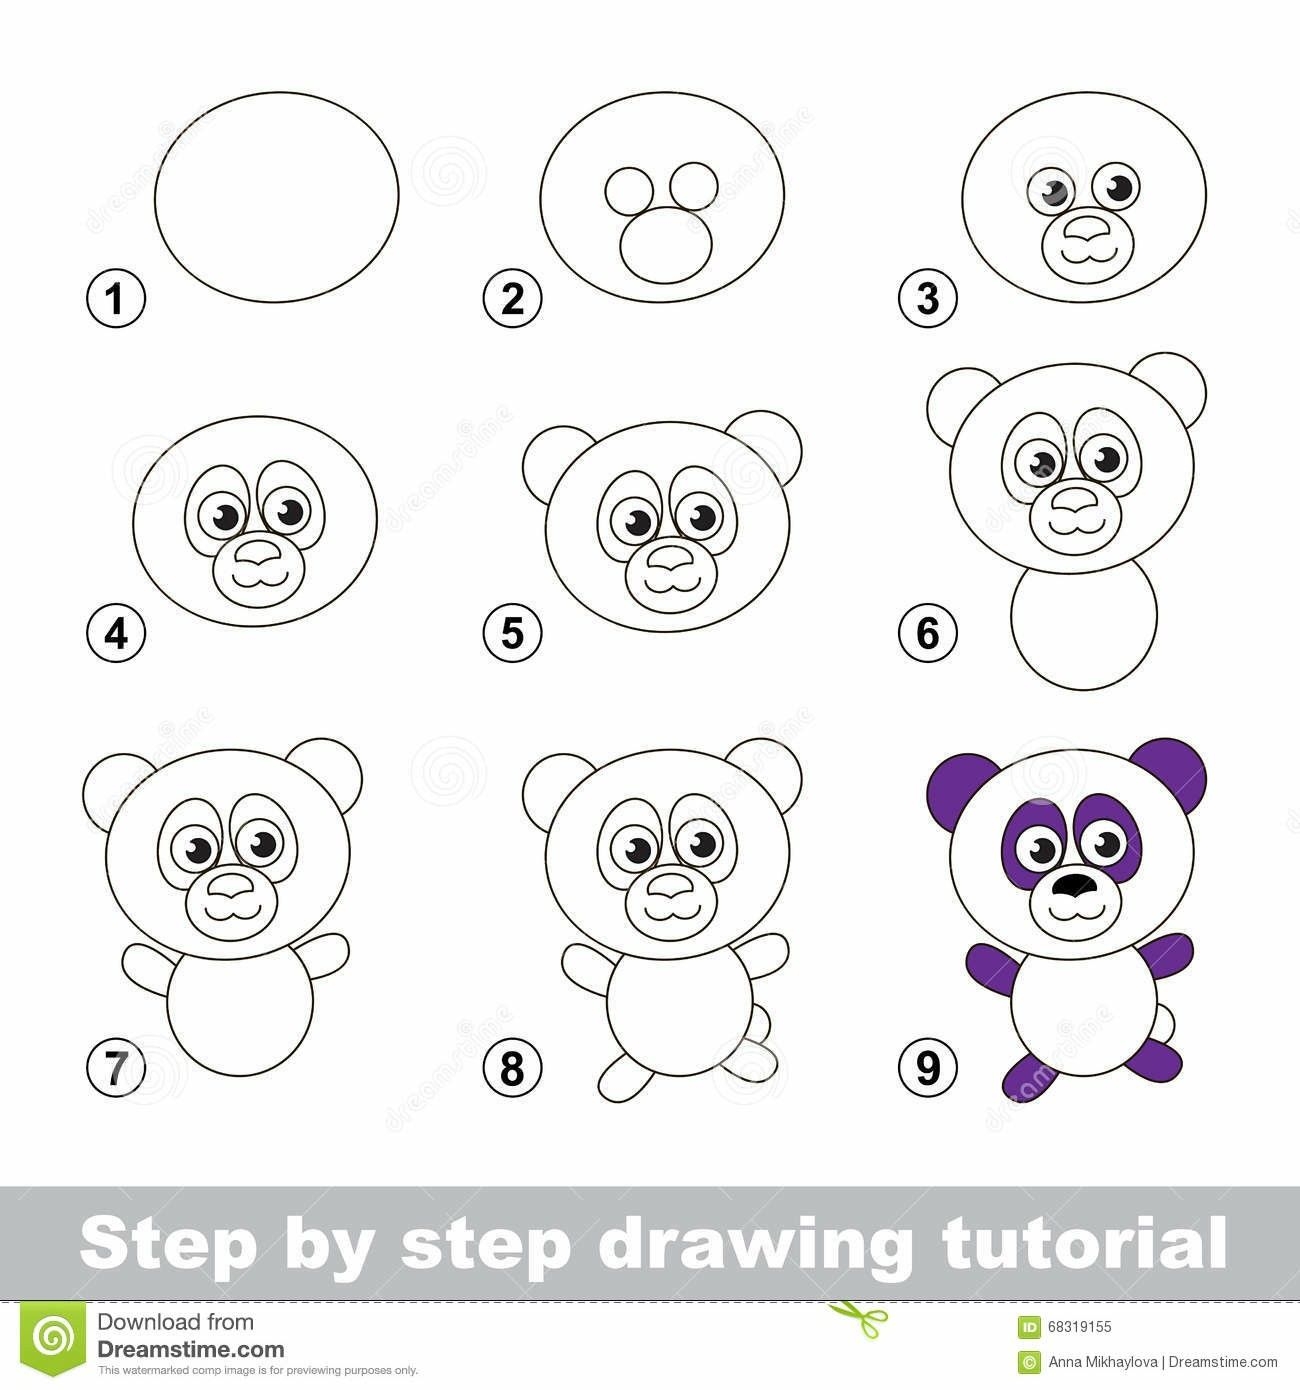 Панда пошаговое рисование для детей